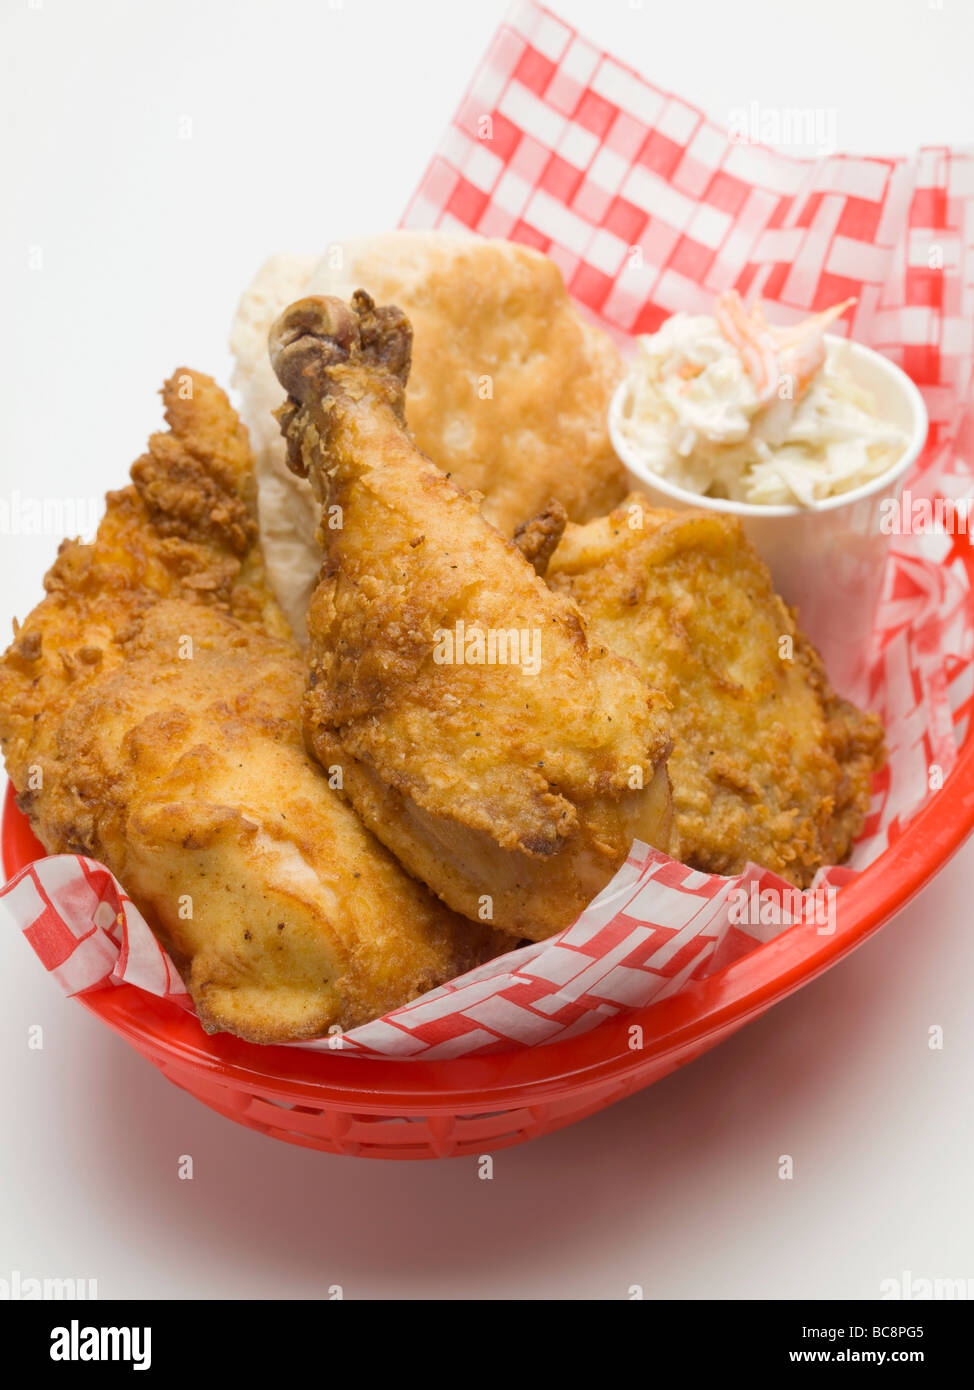 Pollo fritto con coleslaw e scone nel cesto in plastica - Foto Stock